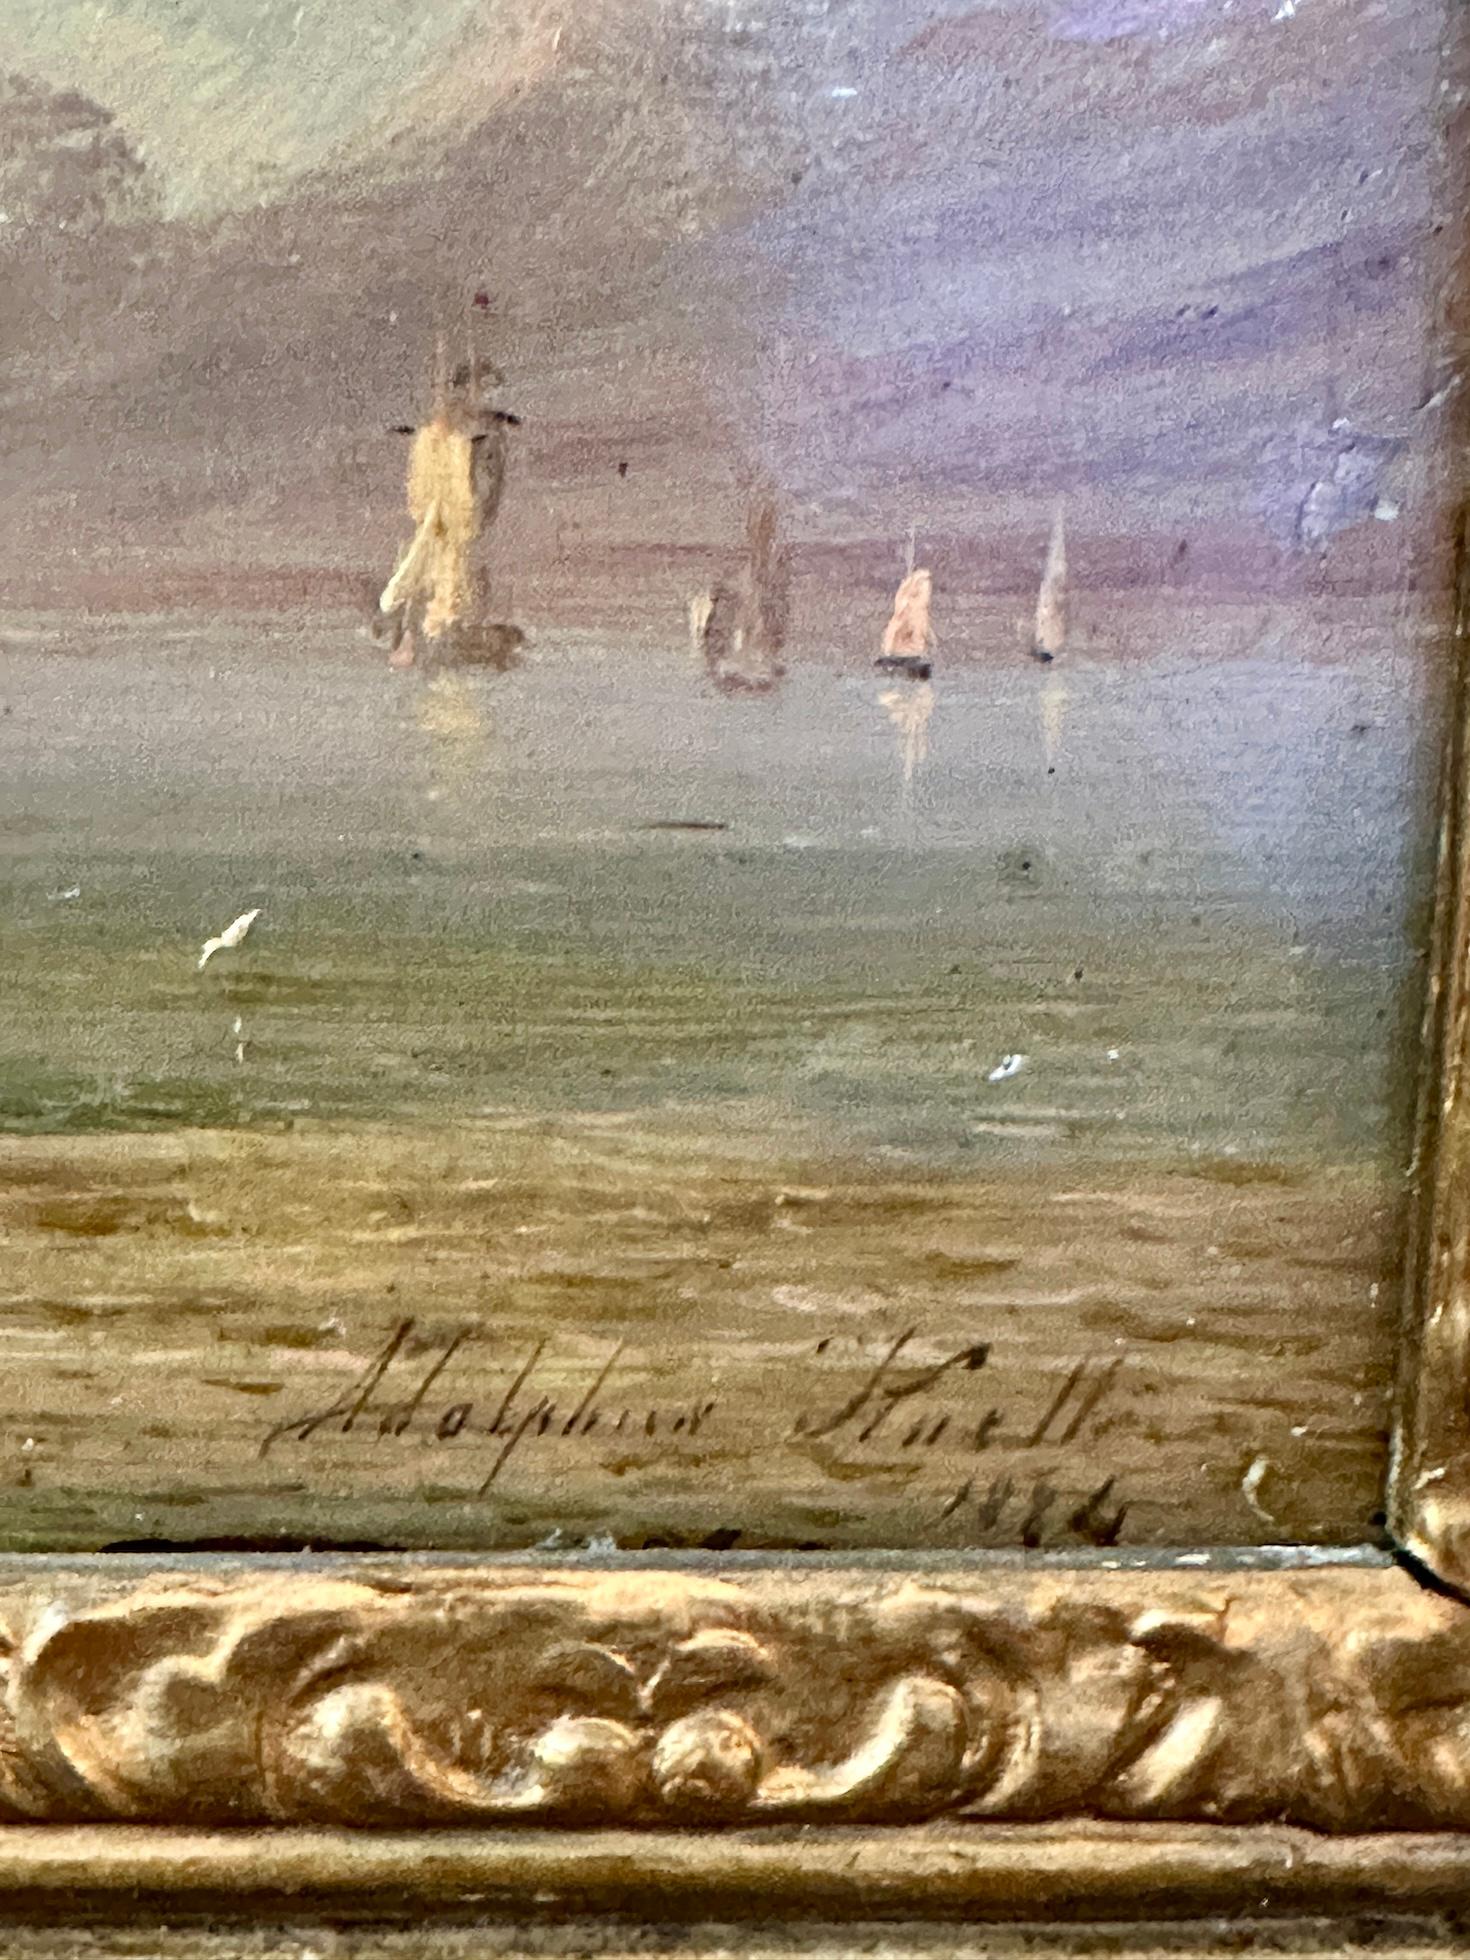 Englisches Fischerboot auf See mit Sonnenaufgang oder Sonnenuntergang aus dem 19. Jahrhundert (Viktorianisch), Painting, von Adolphus Knell